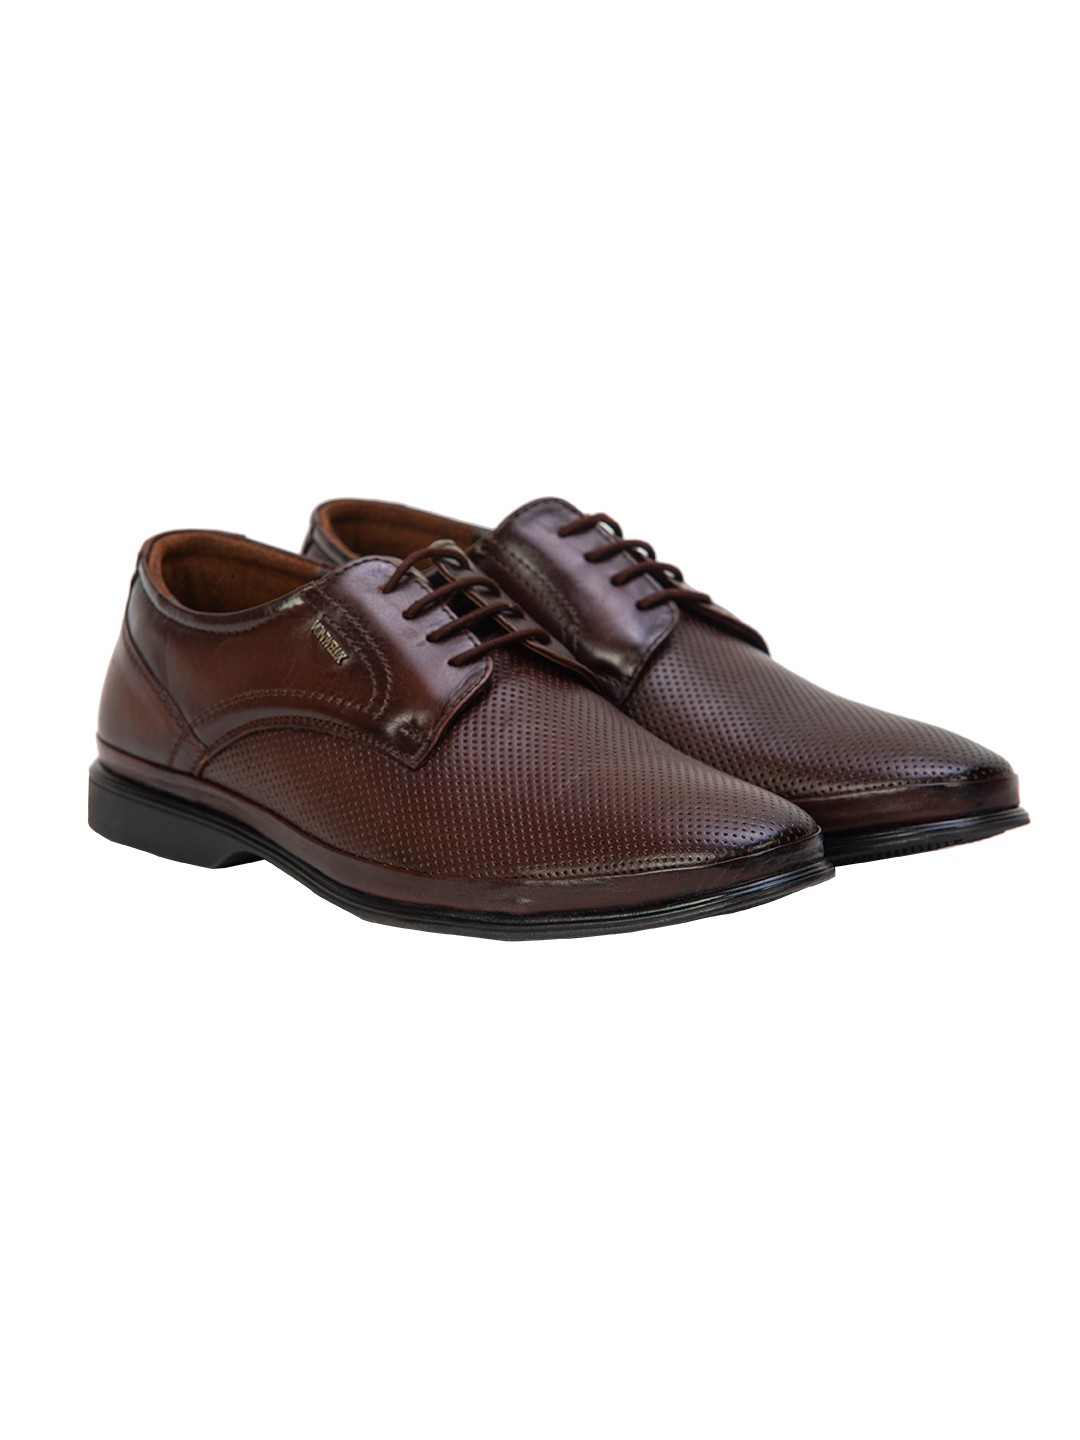 Buy Von Wellx Germany Comfort Coen Brown Shoes Online in Agra